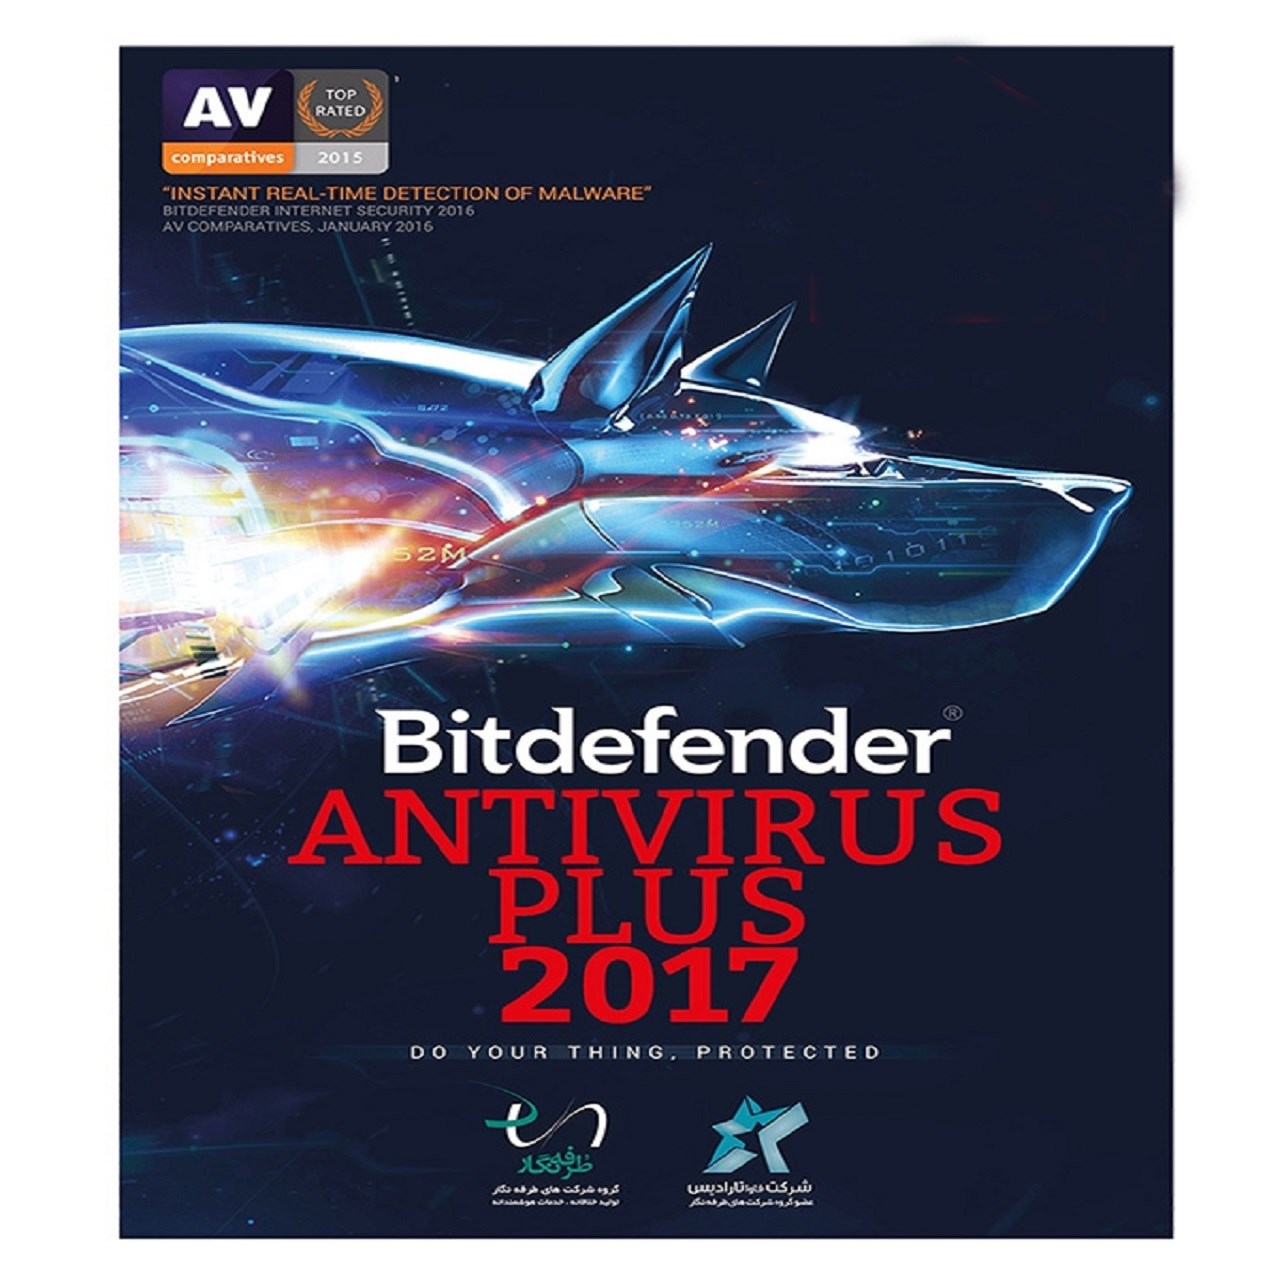 آنتی ویروس بیت دیفندر پلاس 2017-3 کاربر -1 ساله آخرین تخفیف محصول 2017 با 35درصد تخفیف